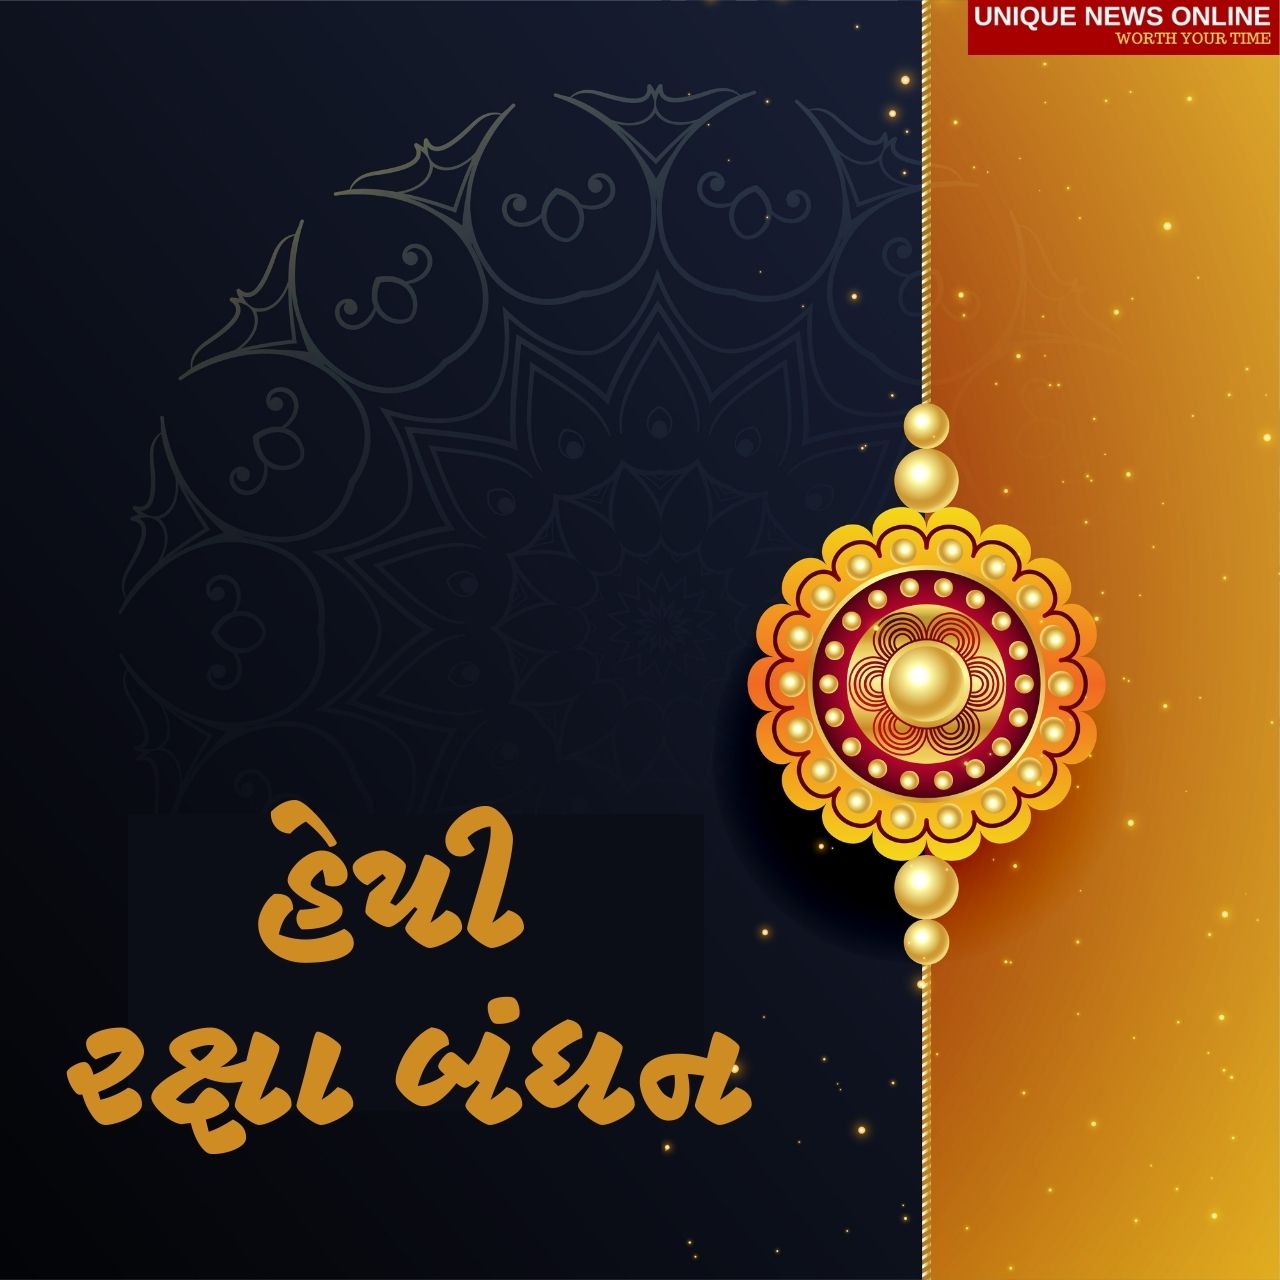 Happy Raksha Bandhan 2021: Gujarati Wishes, Quotes, HD Images, Greetings, Shayari, and Messages